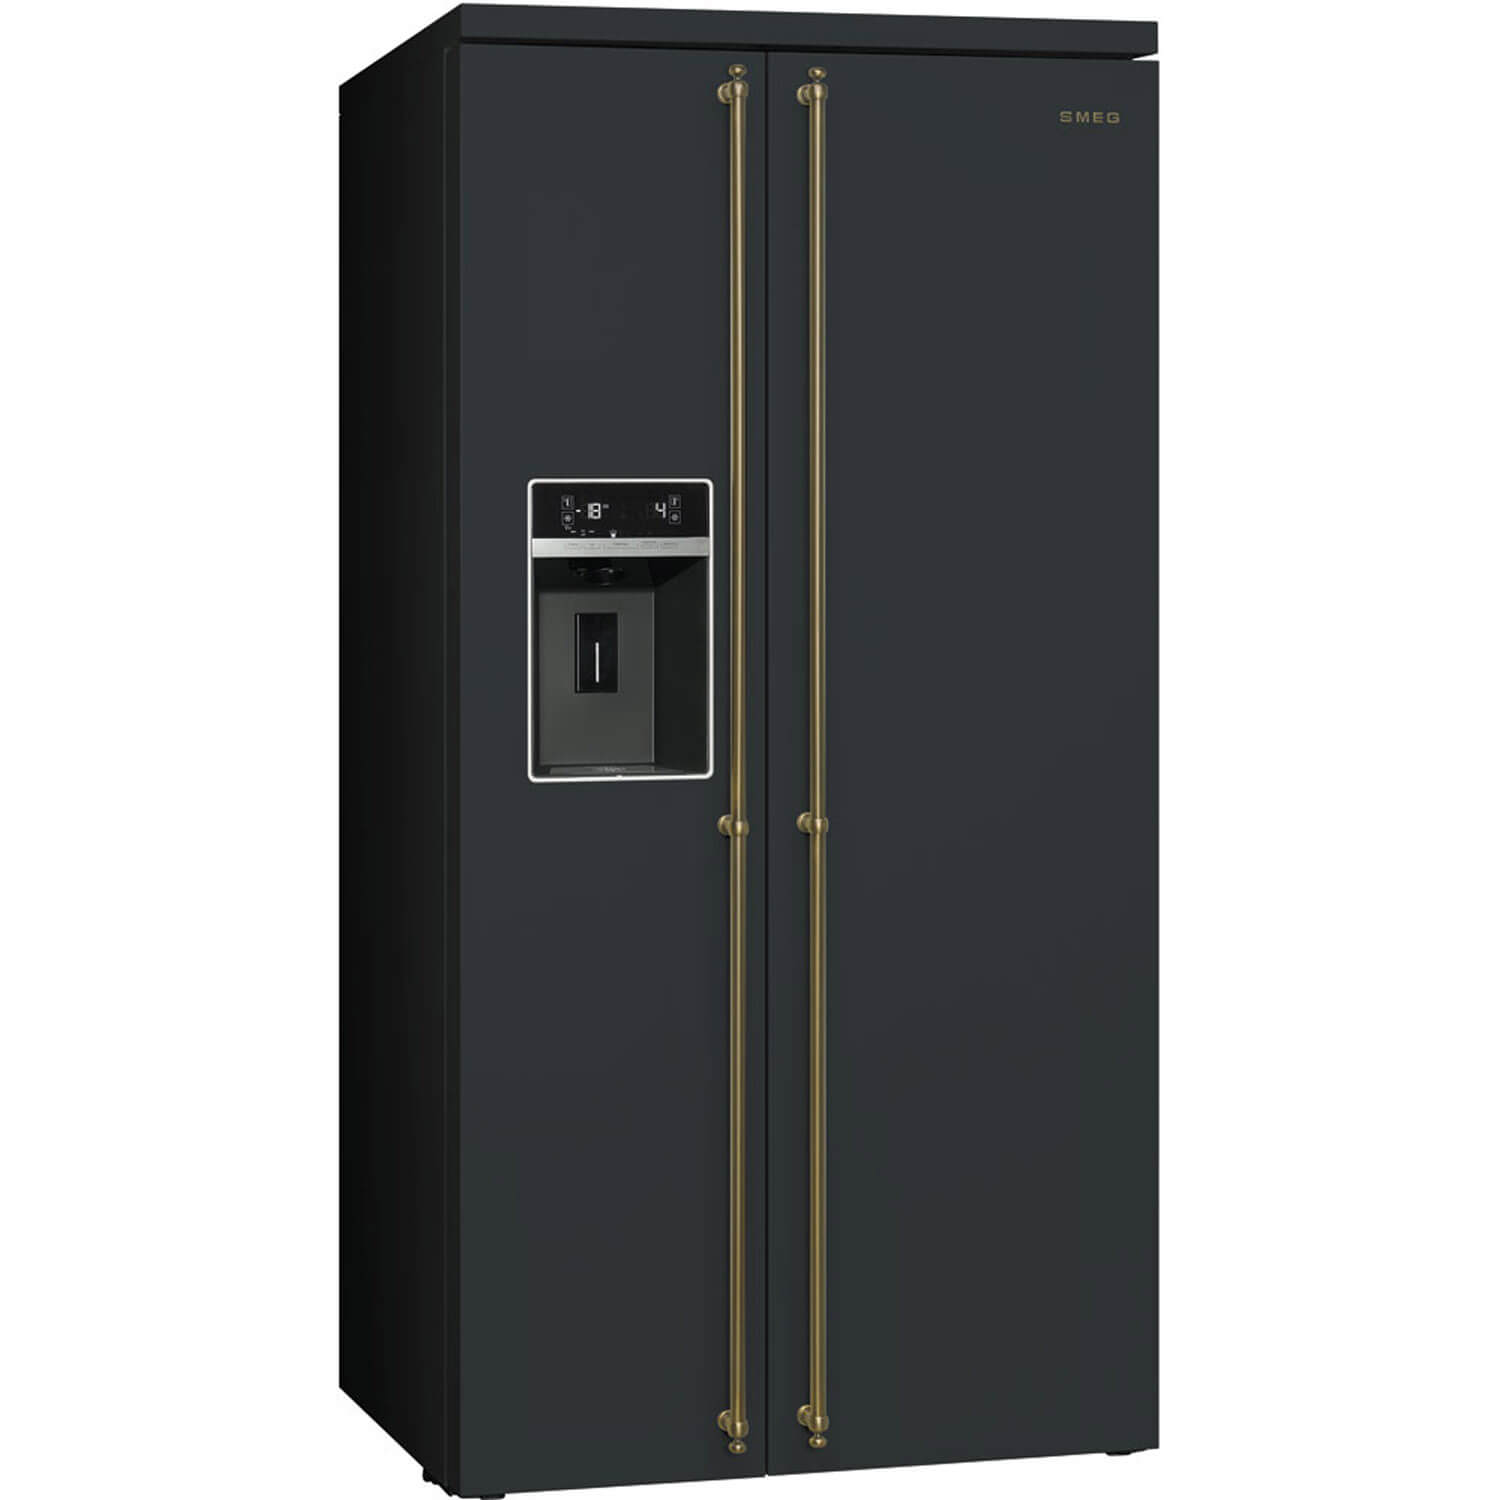 Smeg Side-by-Side Kühlschrank in Schwarz mit goldenen Griffstangen. Foto: Smeg